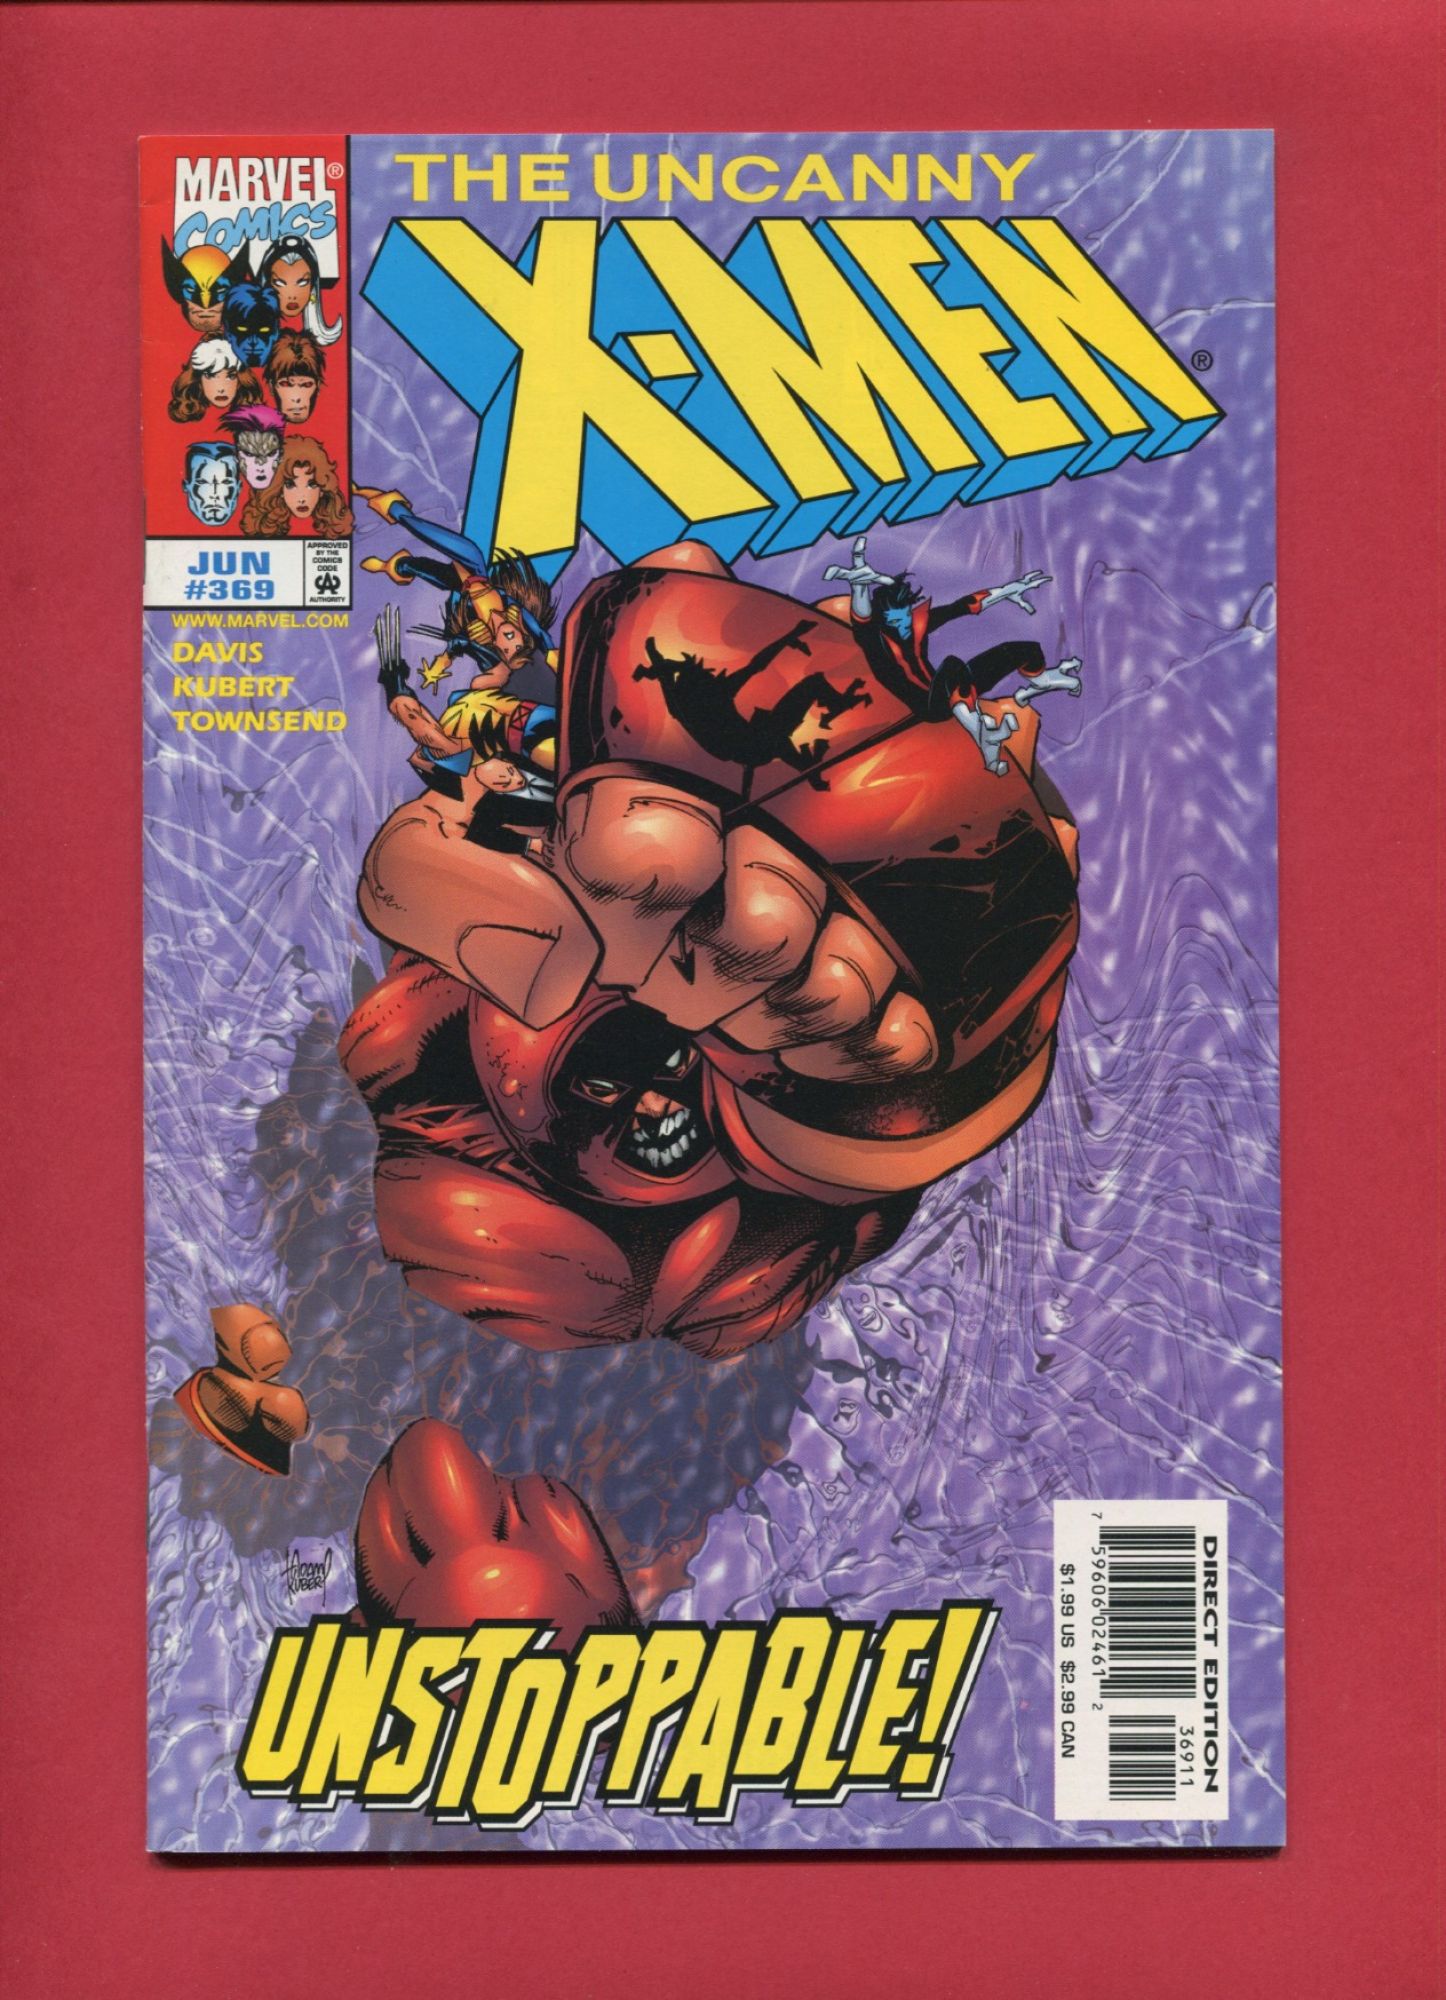 Uncanny X-Men #369, Jun 1999, 8.0 VF